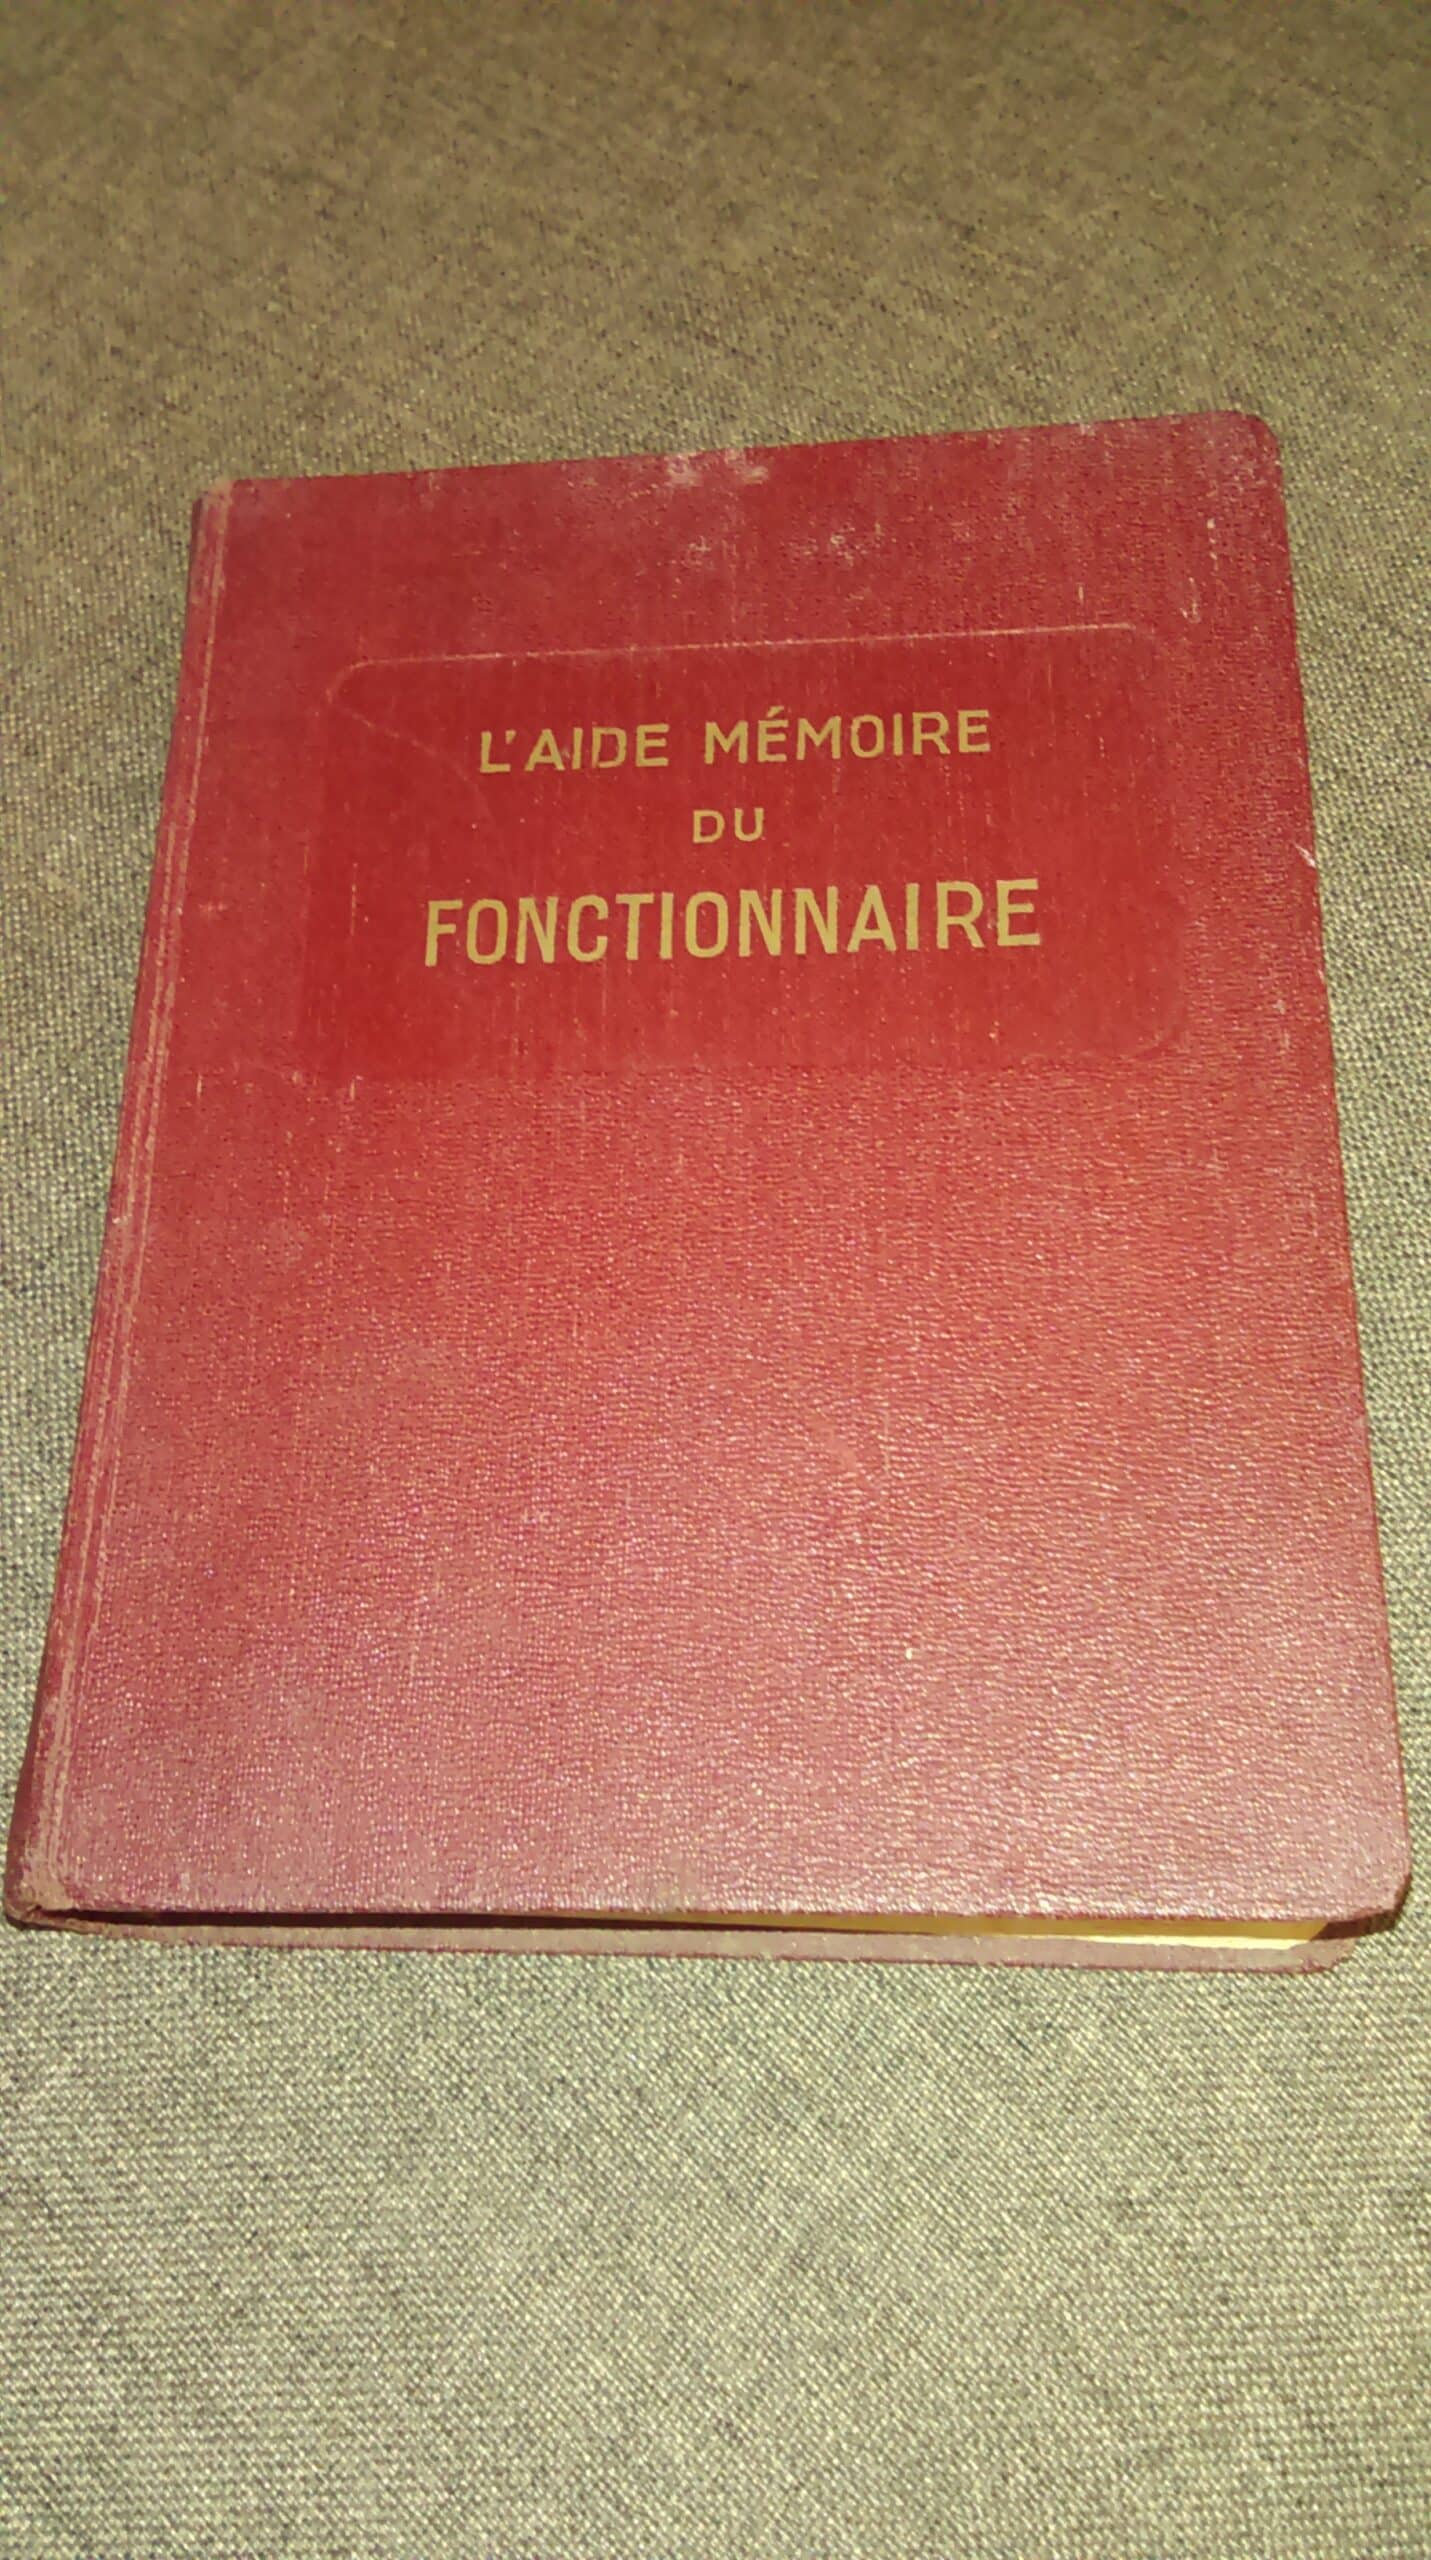 Estimation Livre, manuscrit: Livre 1935